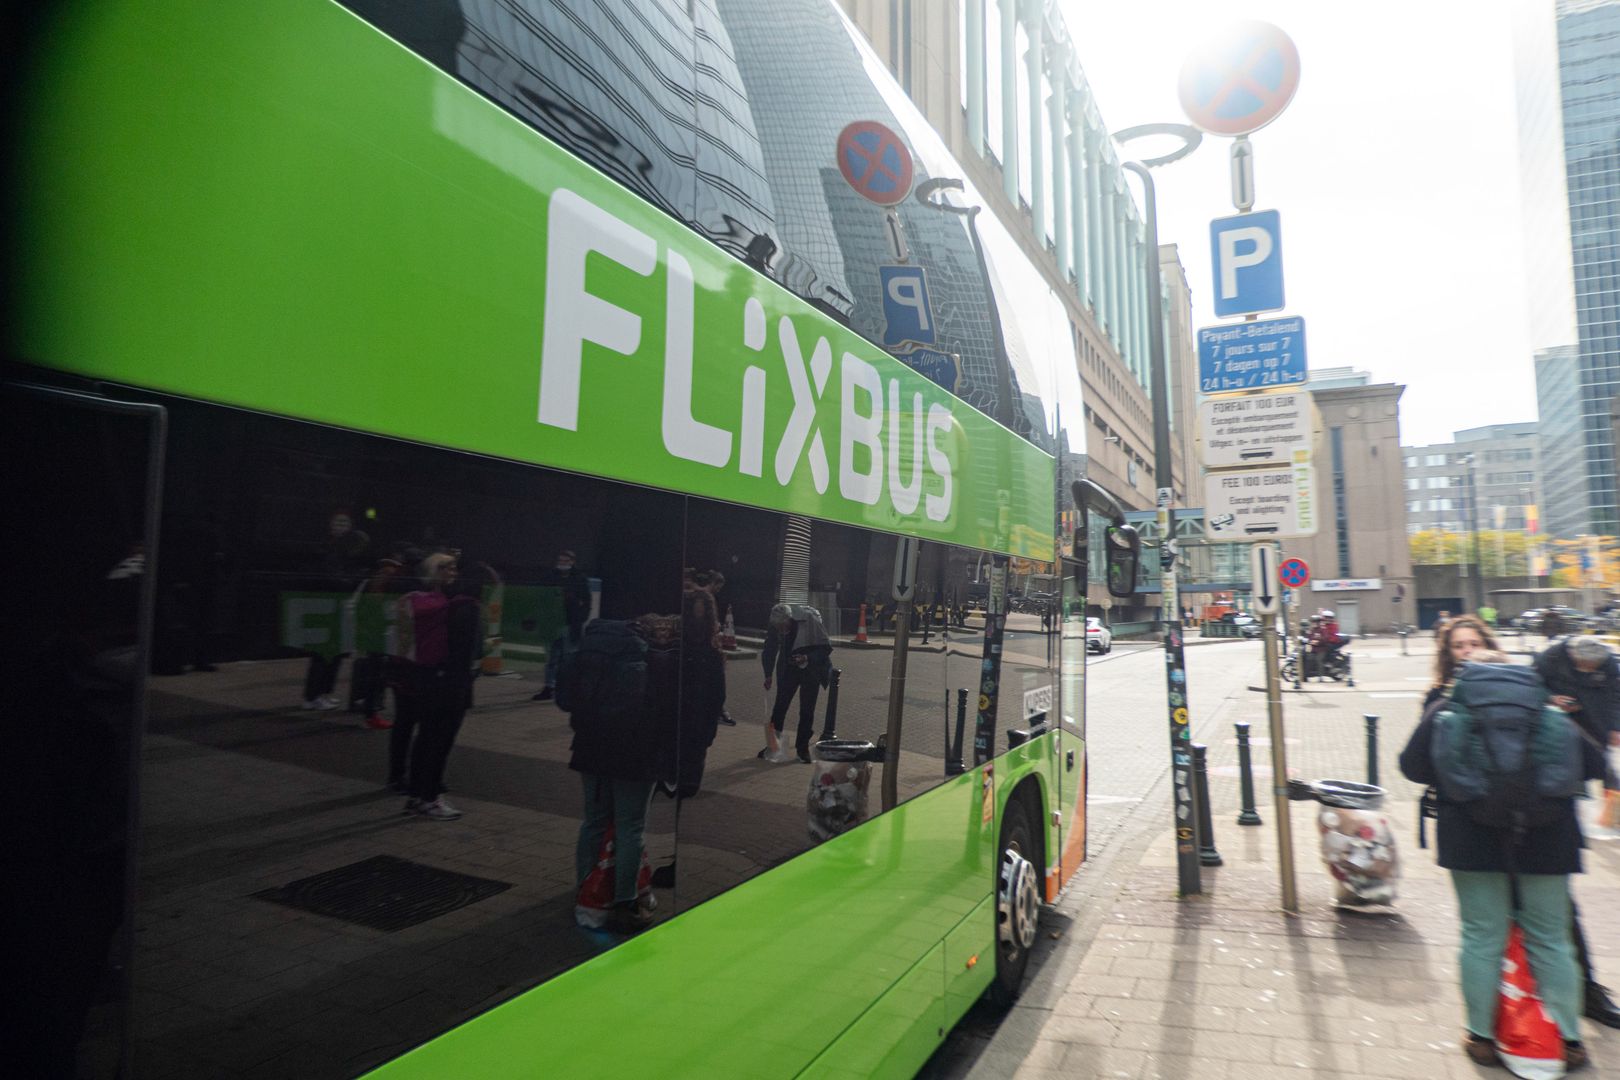 FlixBus zostawił kobietę samą na stacji. "Krzyczałam, aby się zatrzymał"